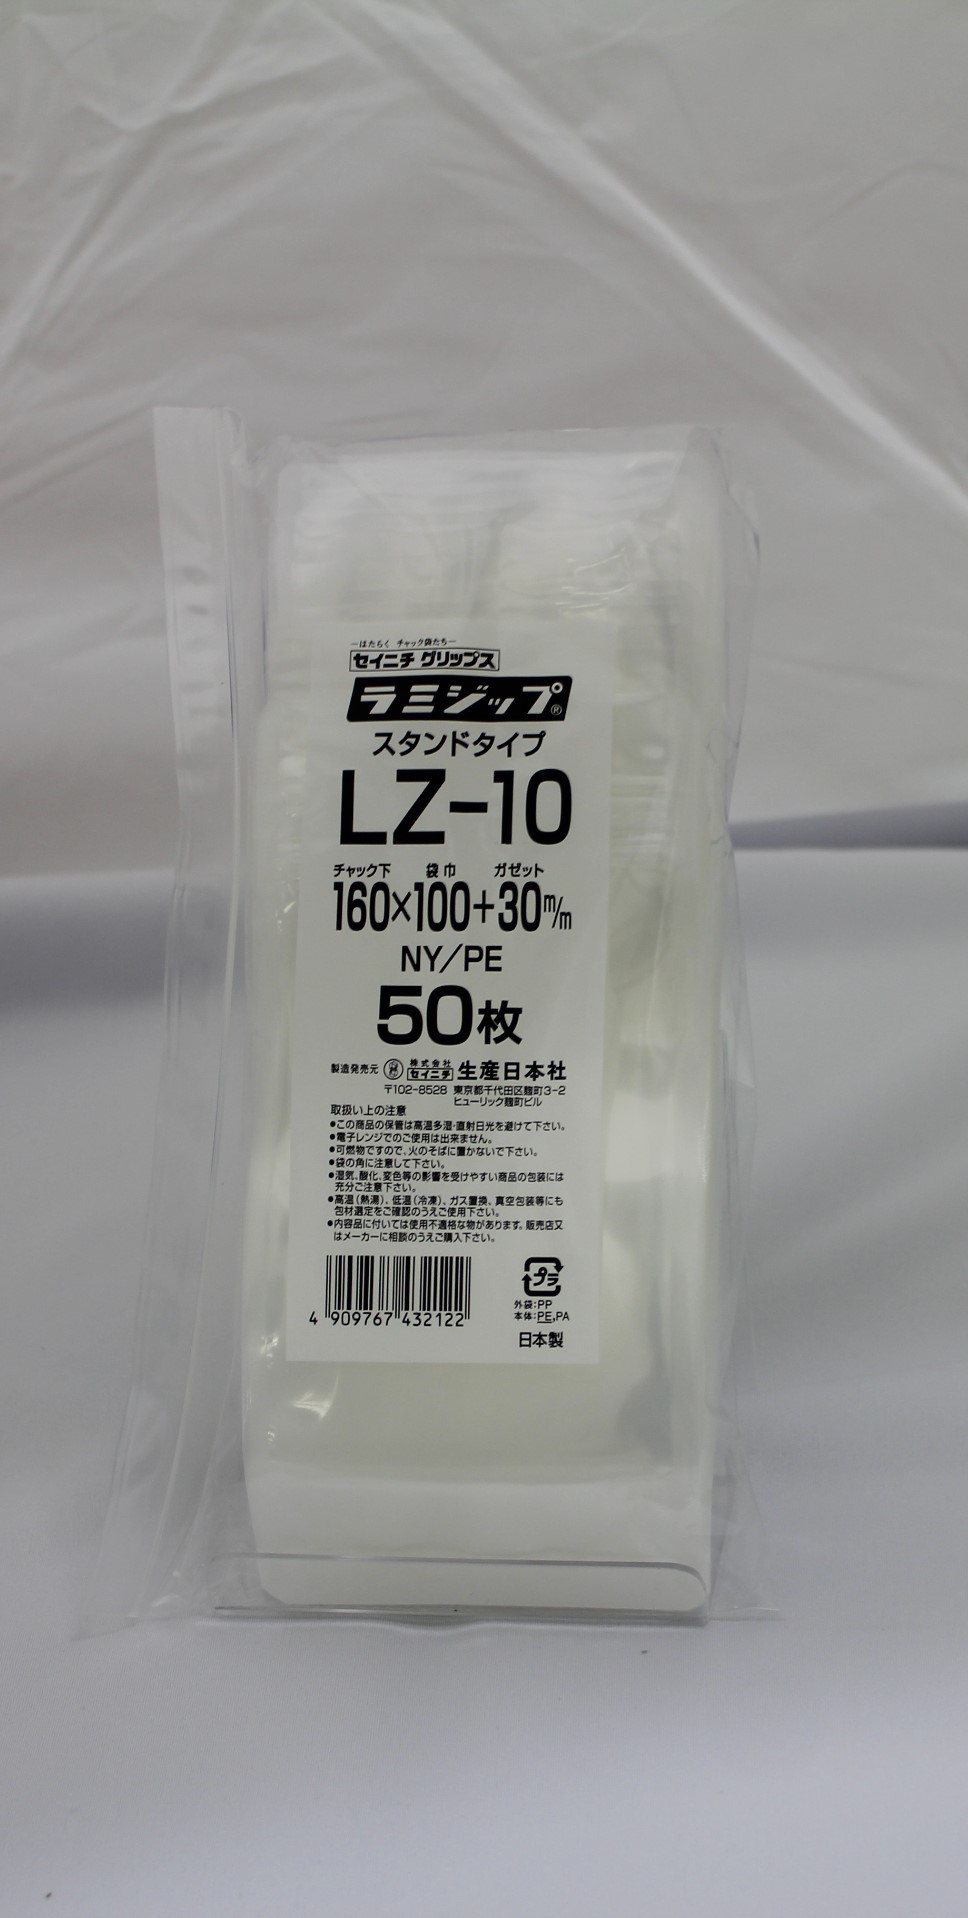 ラミジップLZ-10 ×27袋-